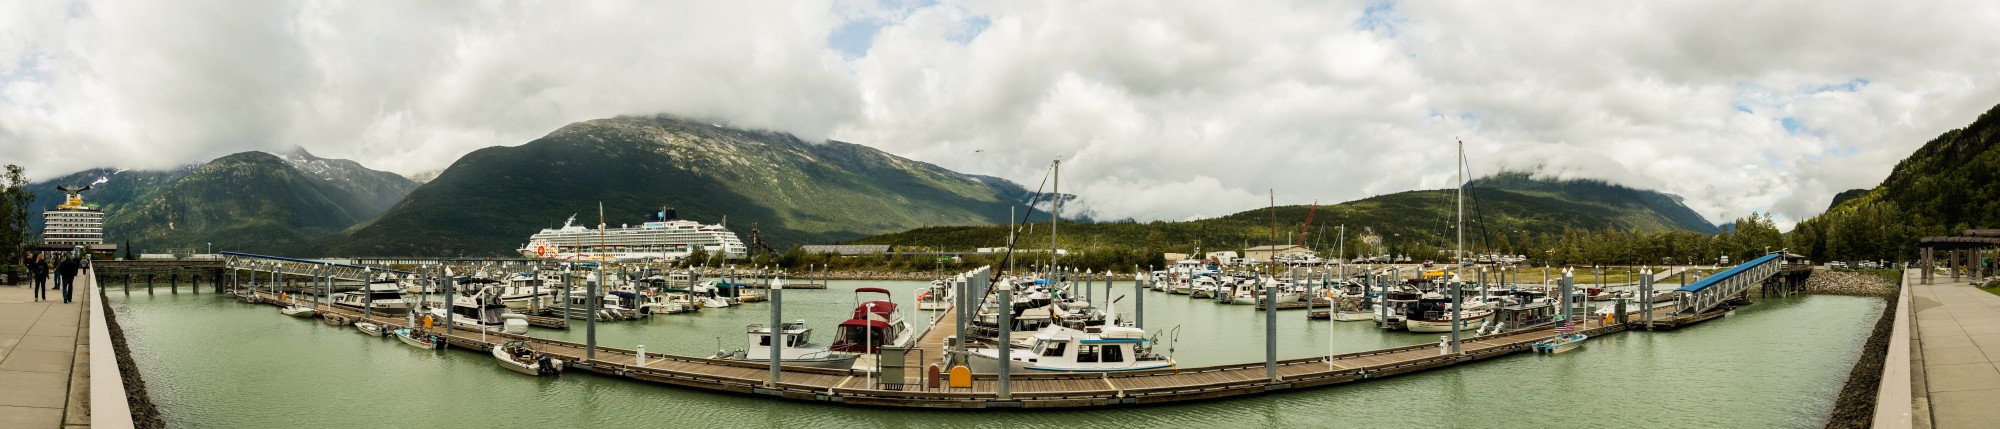 Puerto de Skagway, Alaska, Estados Unidos, 2017-08-18, DD 16-20 PAN